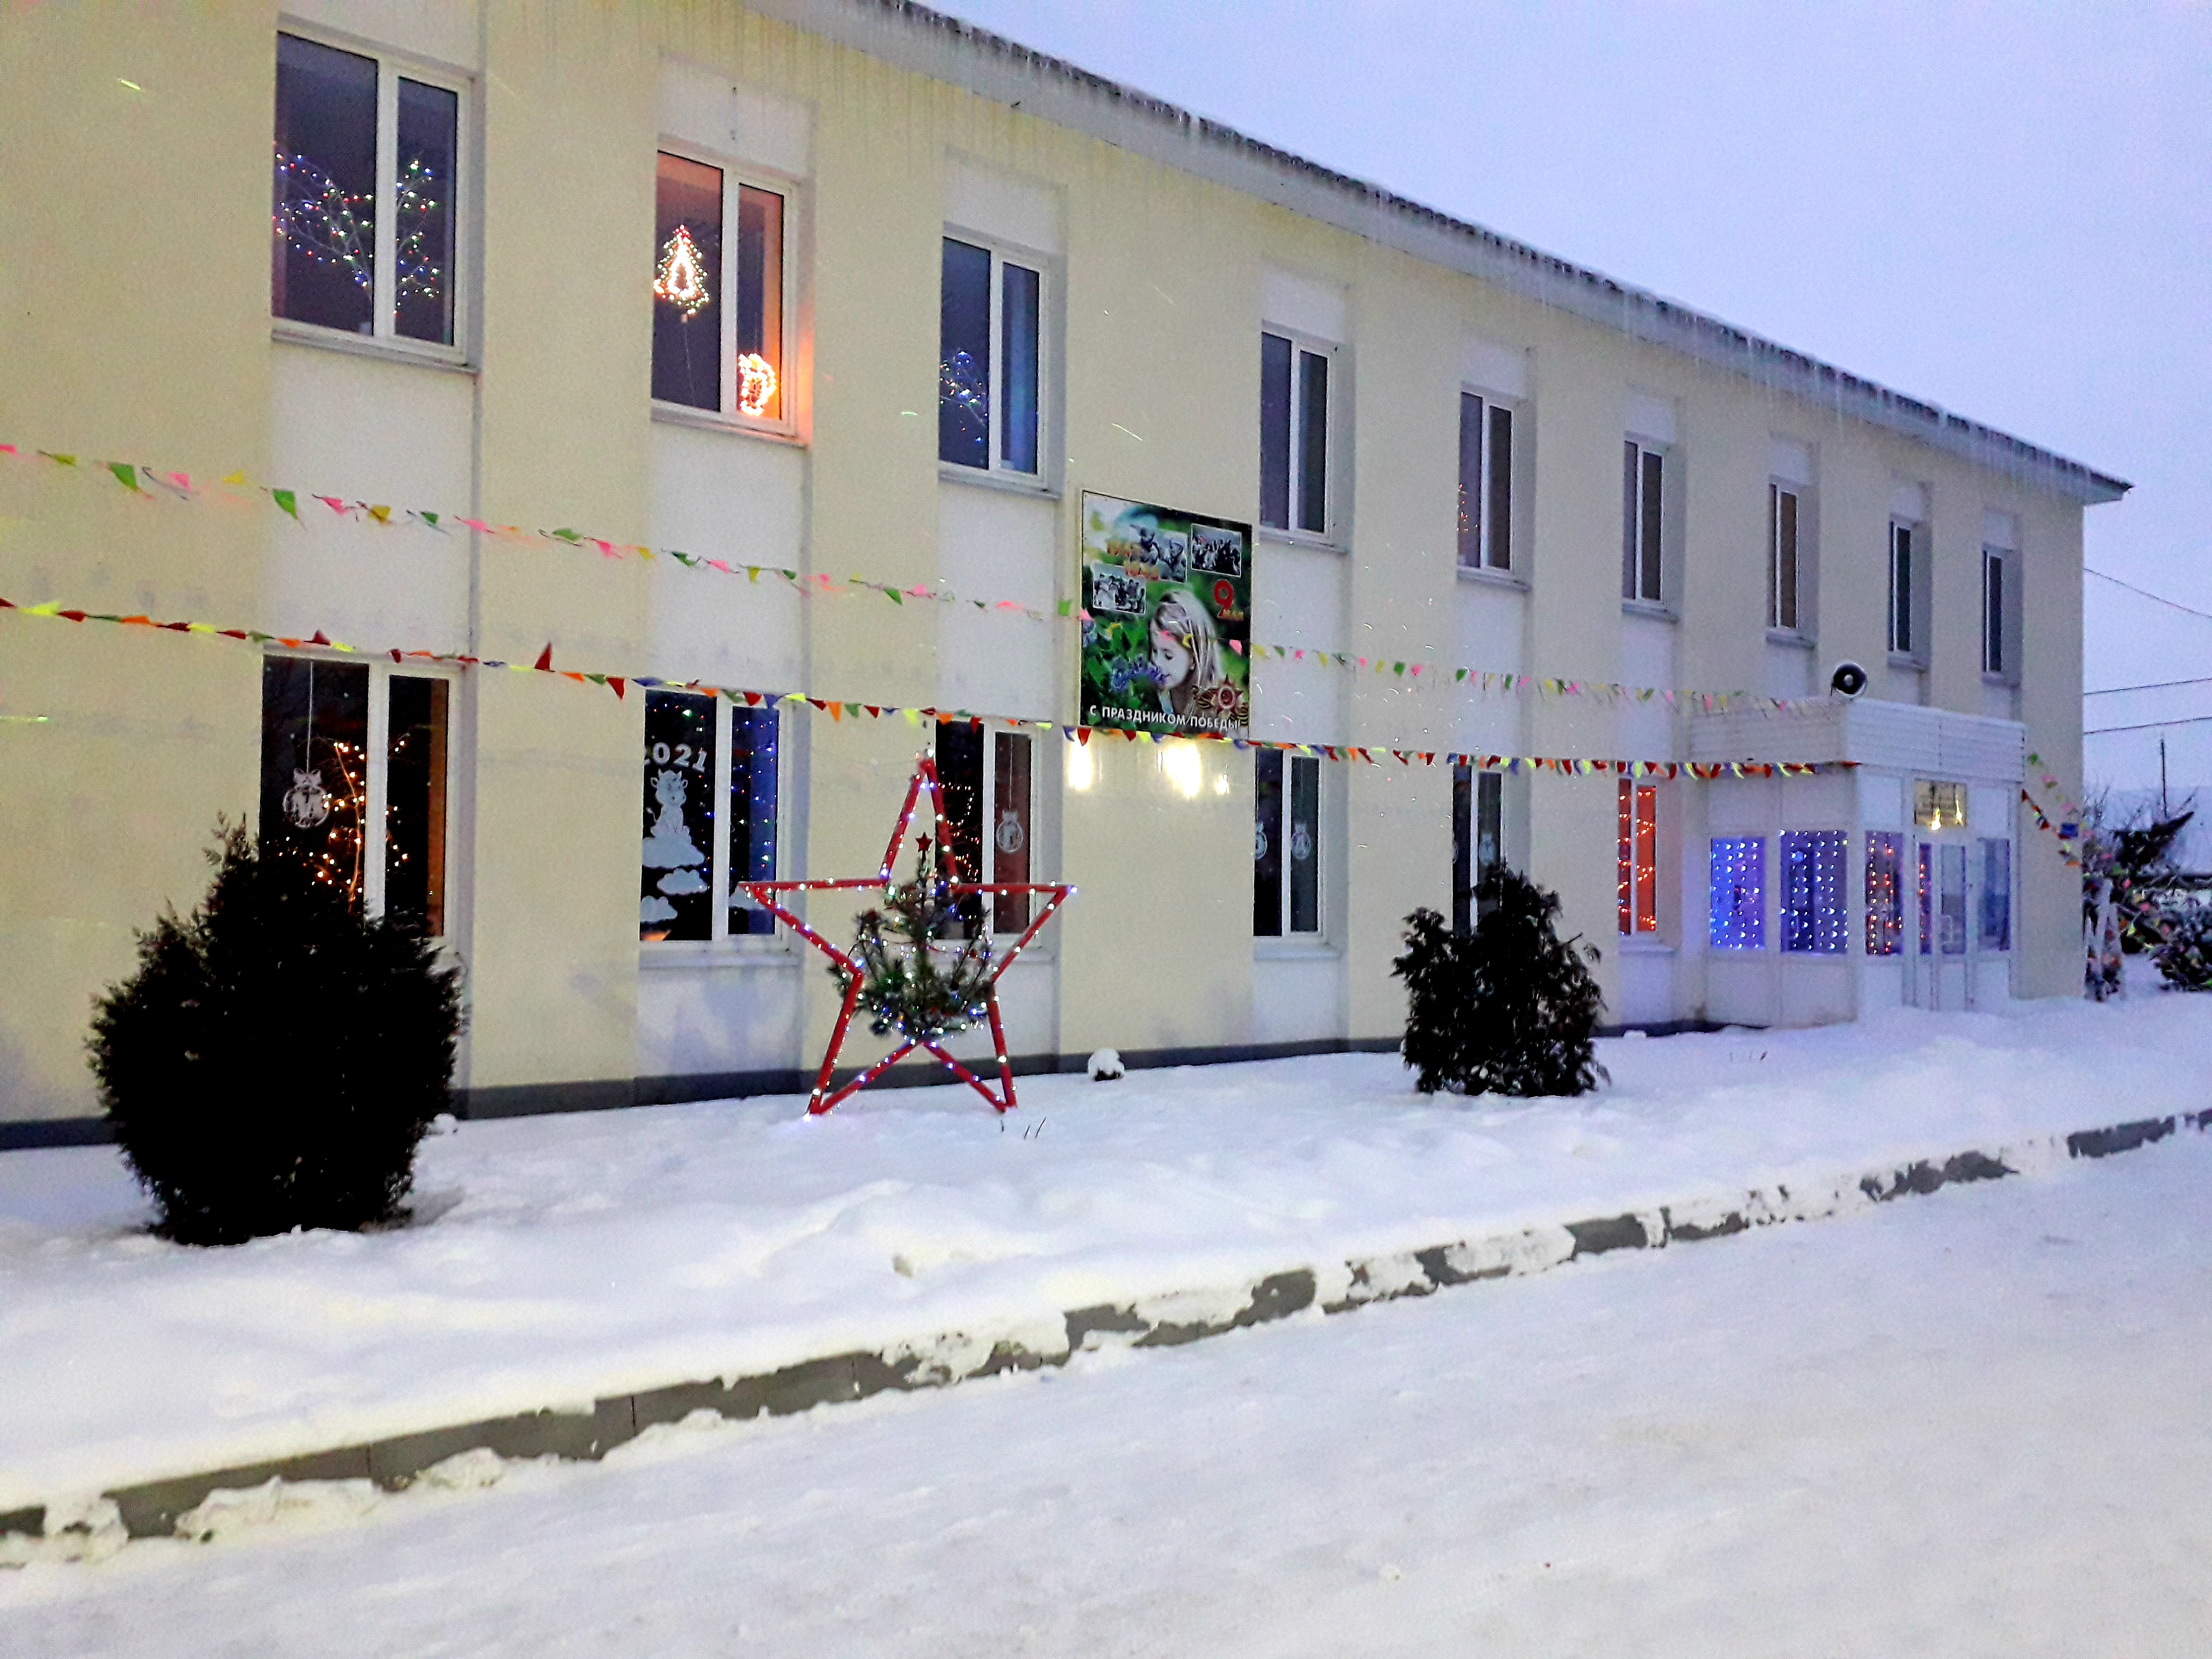 Бизнес-инкубатор села Наровчат получил грамоту за новогоднее оформление